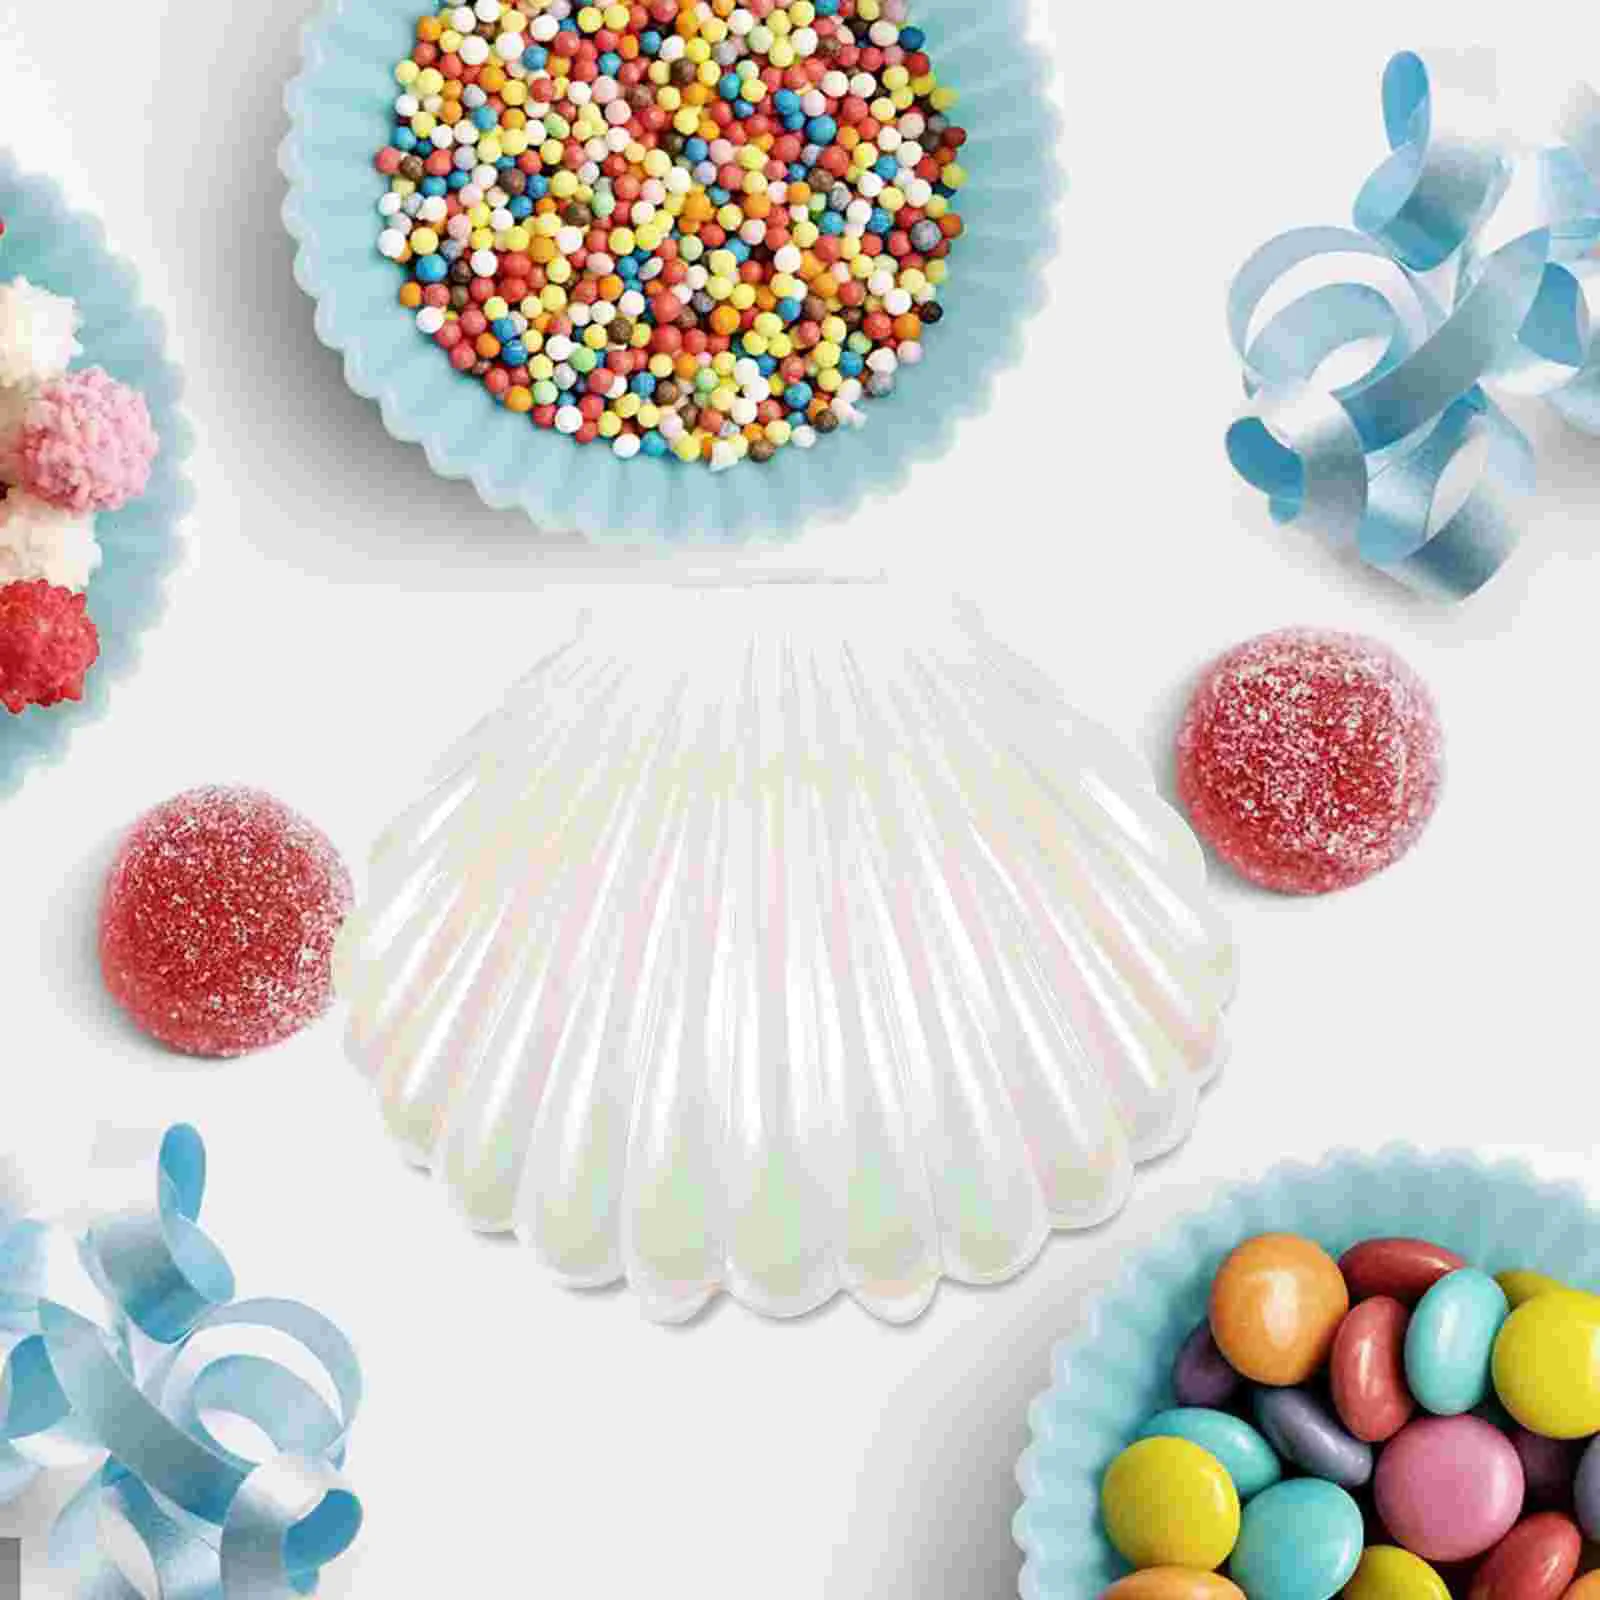 10 יח ' סוכריות בקופסת פלסטיק מיכלי קונכיות תכשיטים המנה לשולחן מתנה מחזיק עמ קטן צנצנת הפצות - 3